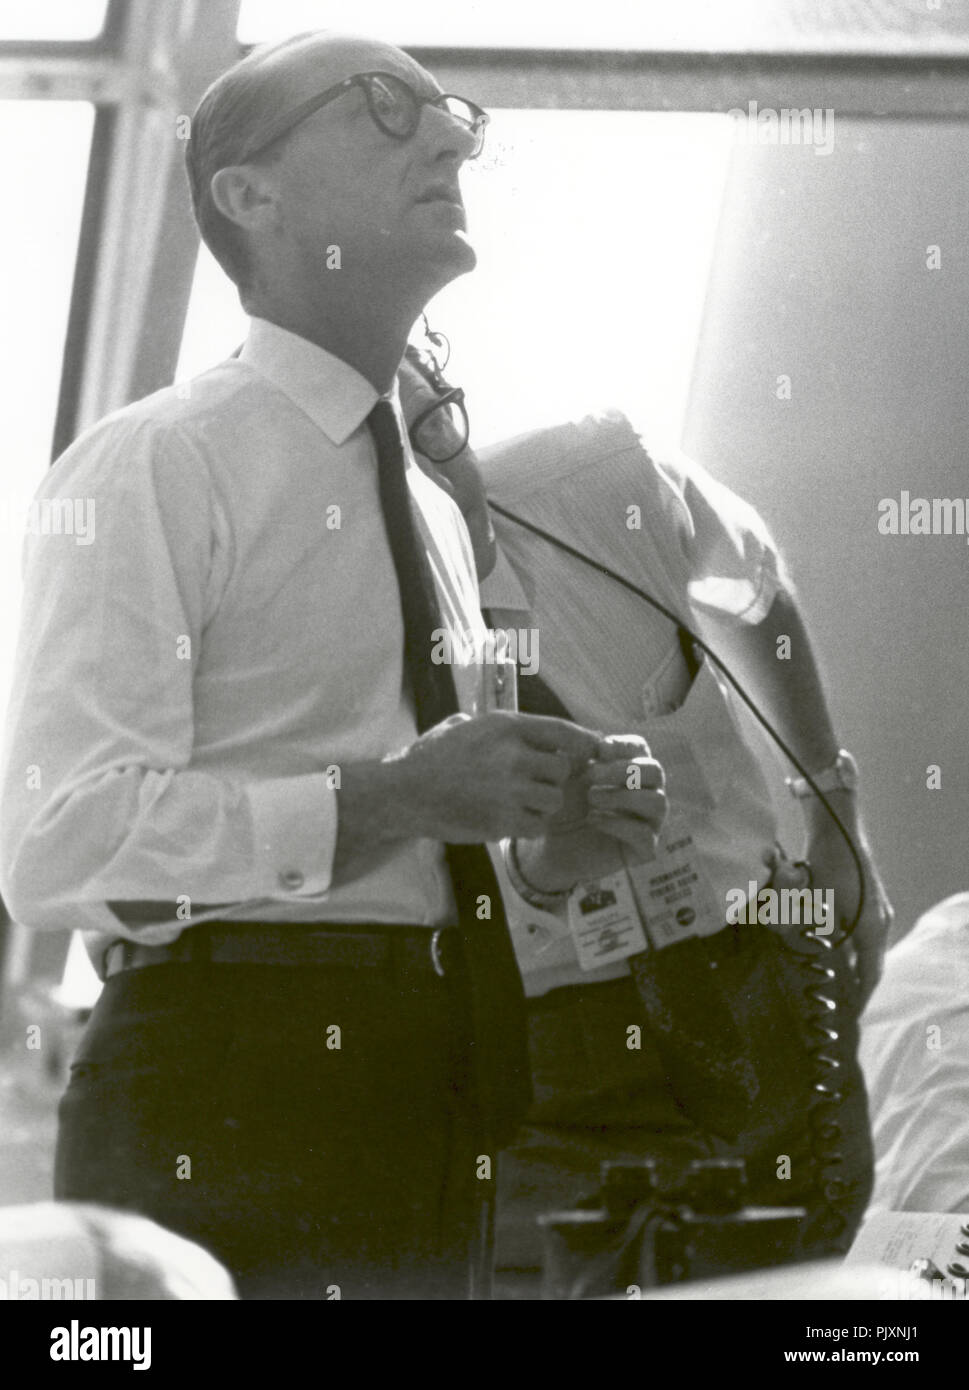 Cape Canaveral, FL - (Datei) - Dr. George E.Mueller, Associate Administrator für die bemannte Raumfahrt, NASA, folgt dem Fortschritt der Apollo 11-Mission. Dieses Foto wurde am 16. Juli, 1969 in der Launch Control Center am Weltraumbahnhof am Morgen der starten. Credit: NASA über CNP/MediaPunch Stockfoto